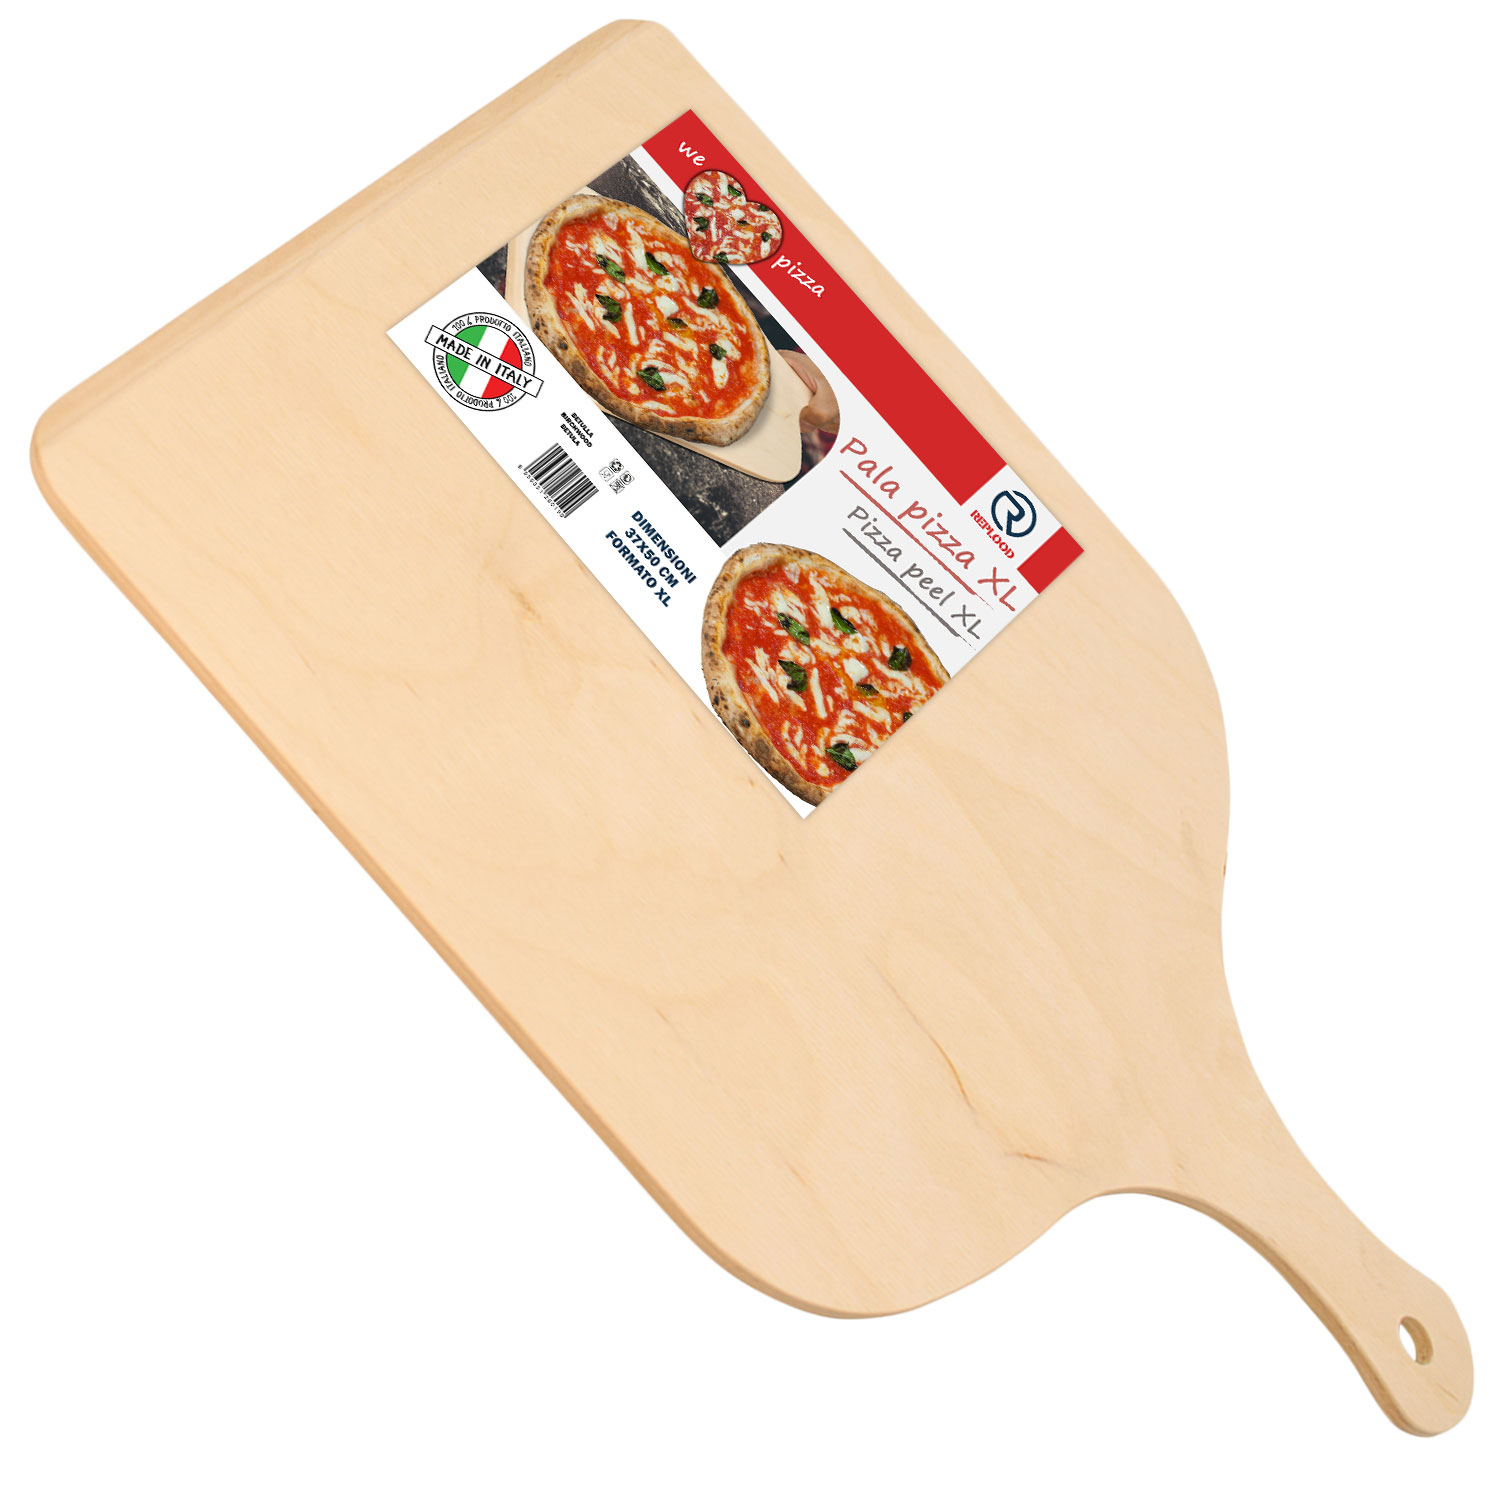 Pala Pizza XL Tagliere Vassoio In Legno Di Betulla 50x37cm Con Impugnatura.